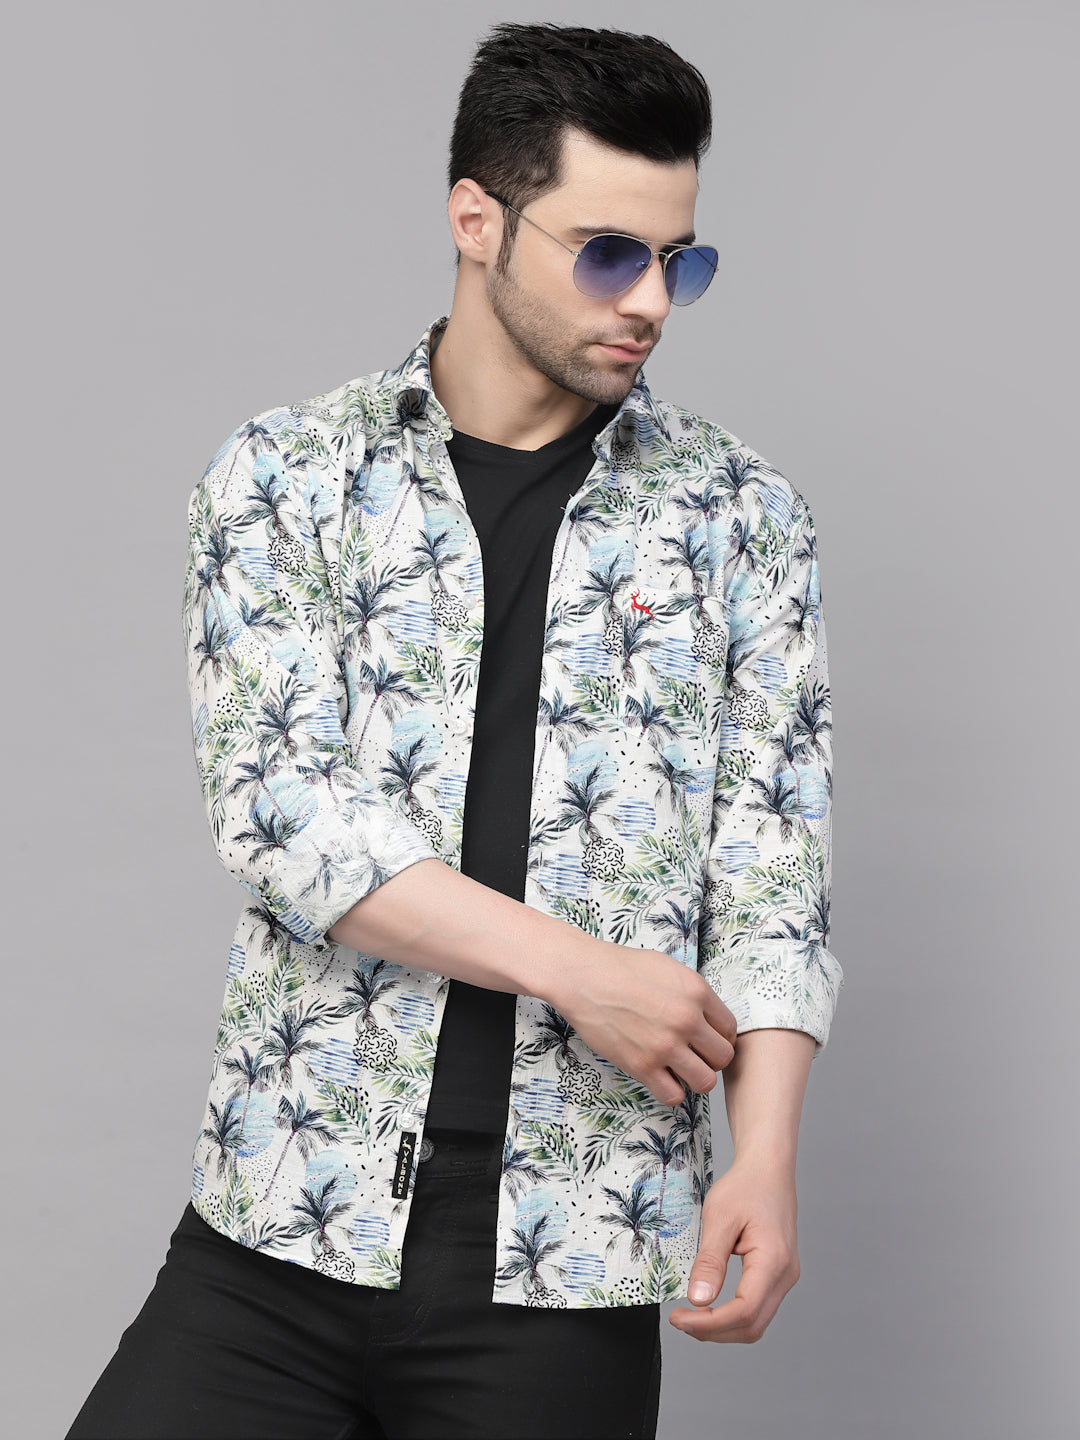 Valbone Men’s Digital Print Regular Fit Casual Shirt Full Sleeves